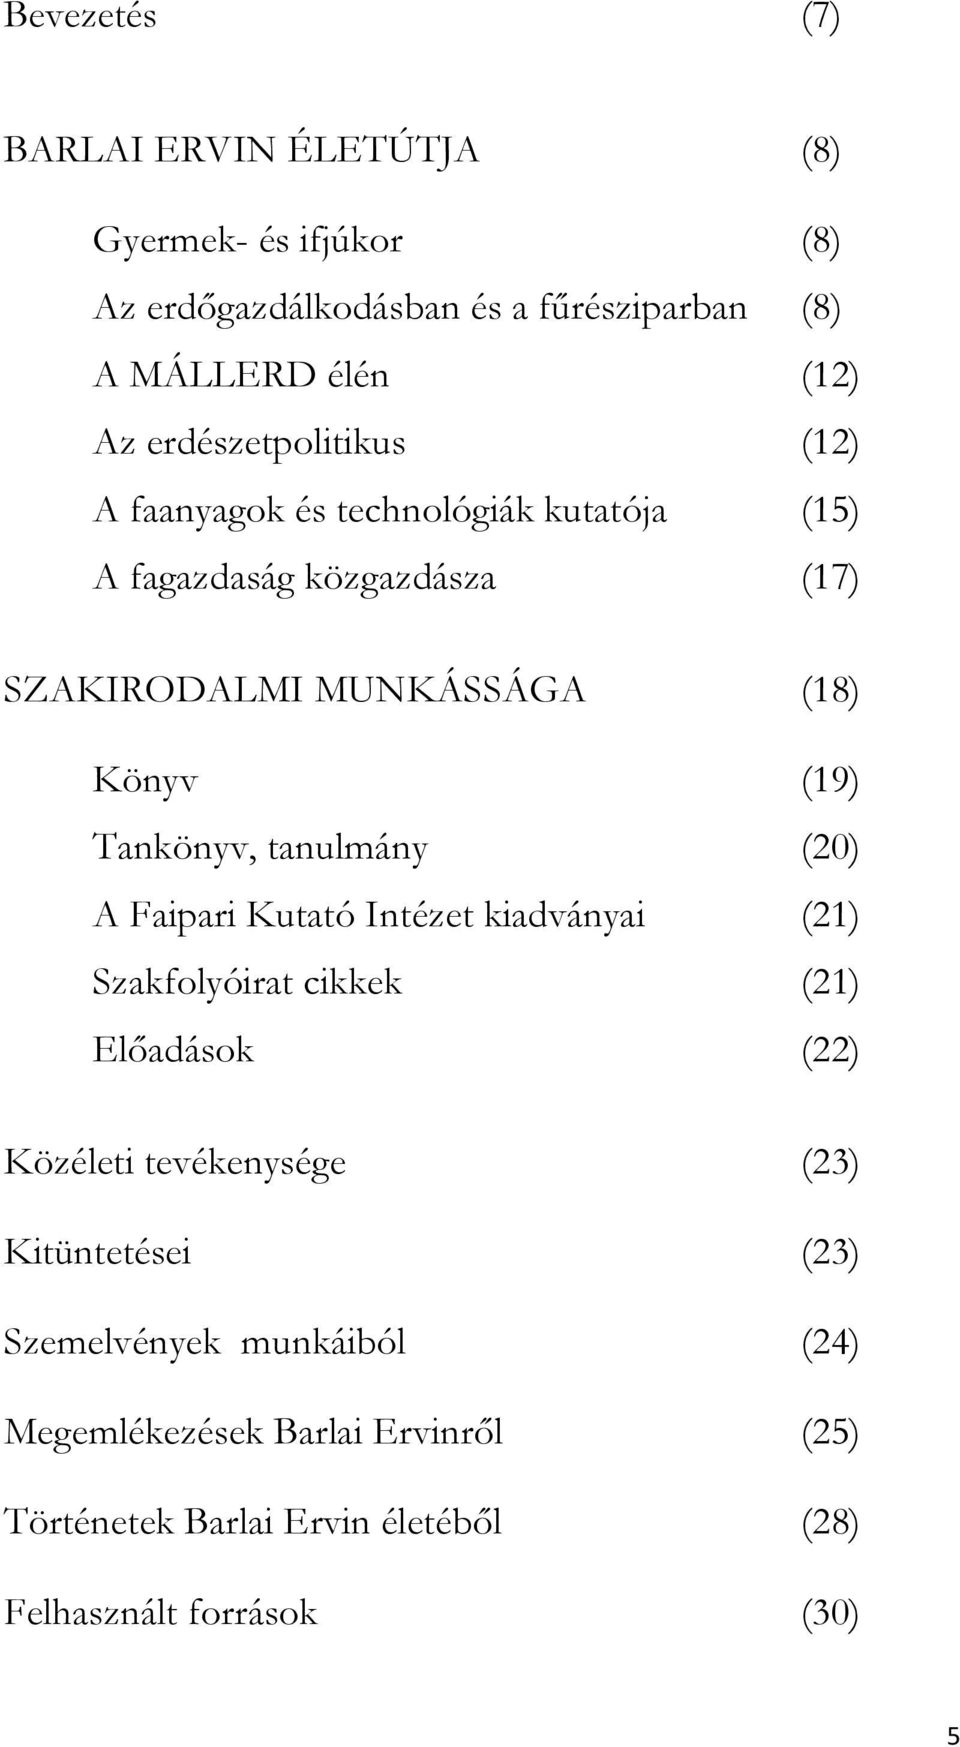 Tankönyv, tanulmány (20) A Faipari Kutató Intézet kiadványai (21) Szakfolyóirat cikkek (21) Előadások (22) Közéleti tevékenysége (23)